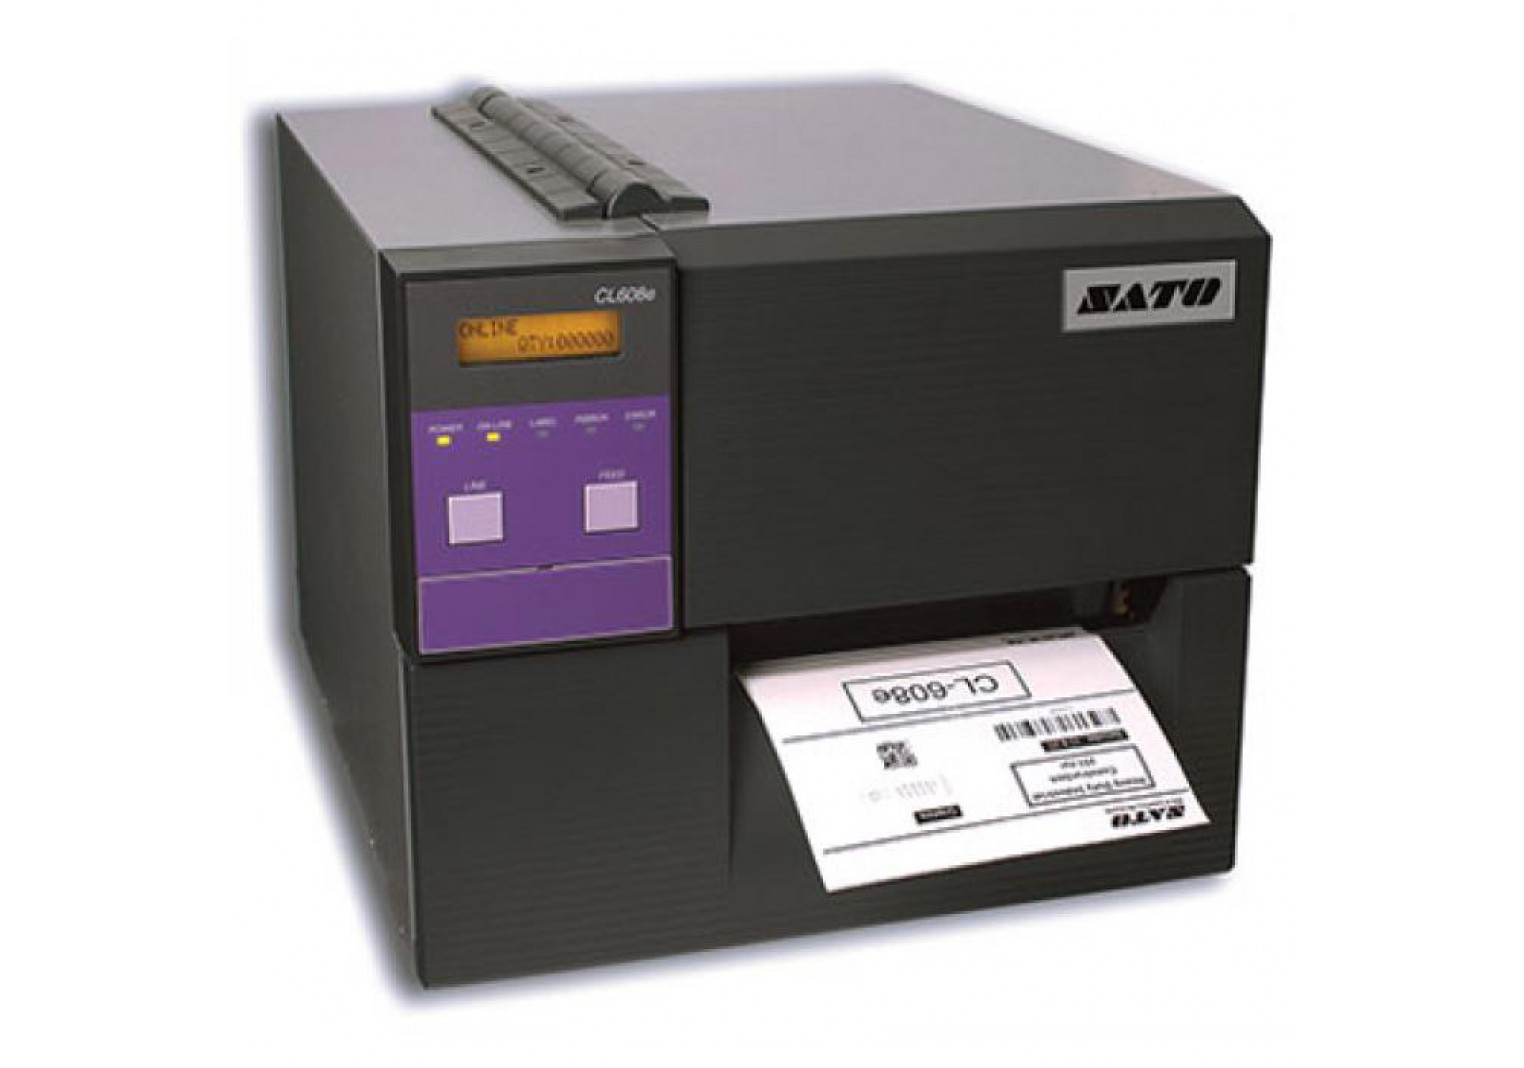 เครื่องพิมพ์บาร์โค้ด SATO CL408e